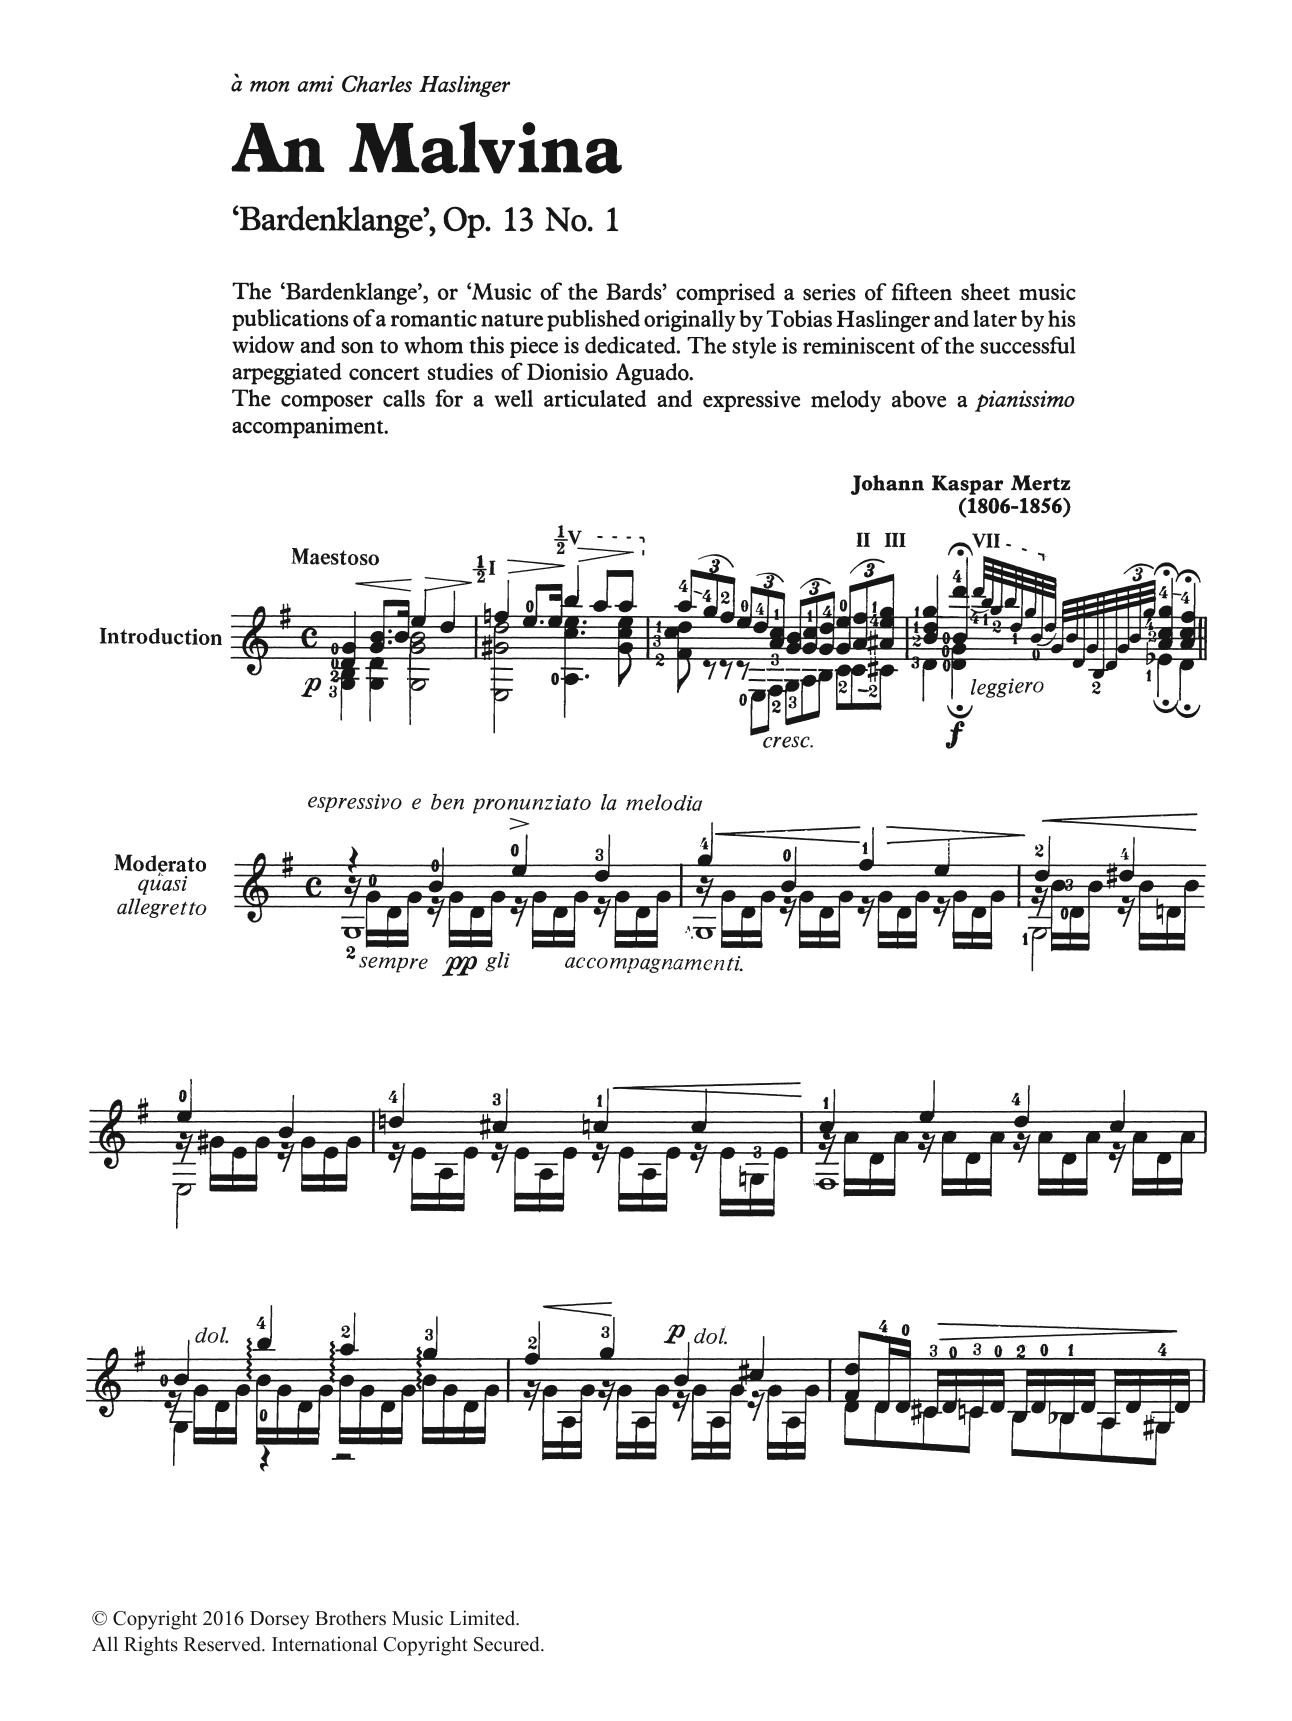 Download Johann Kaspar Mertz An Malvina Sheet Music